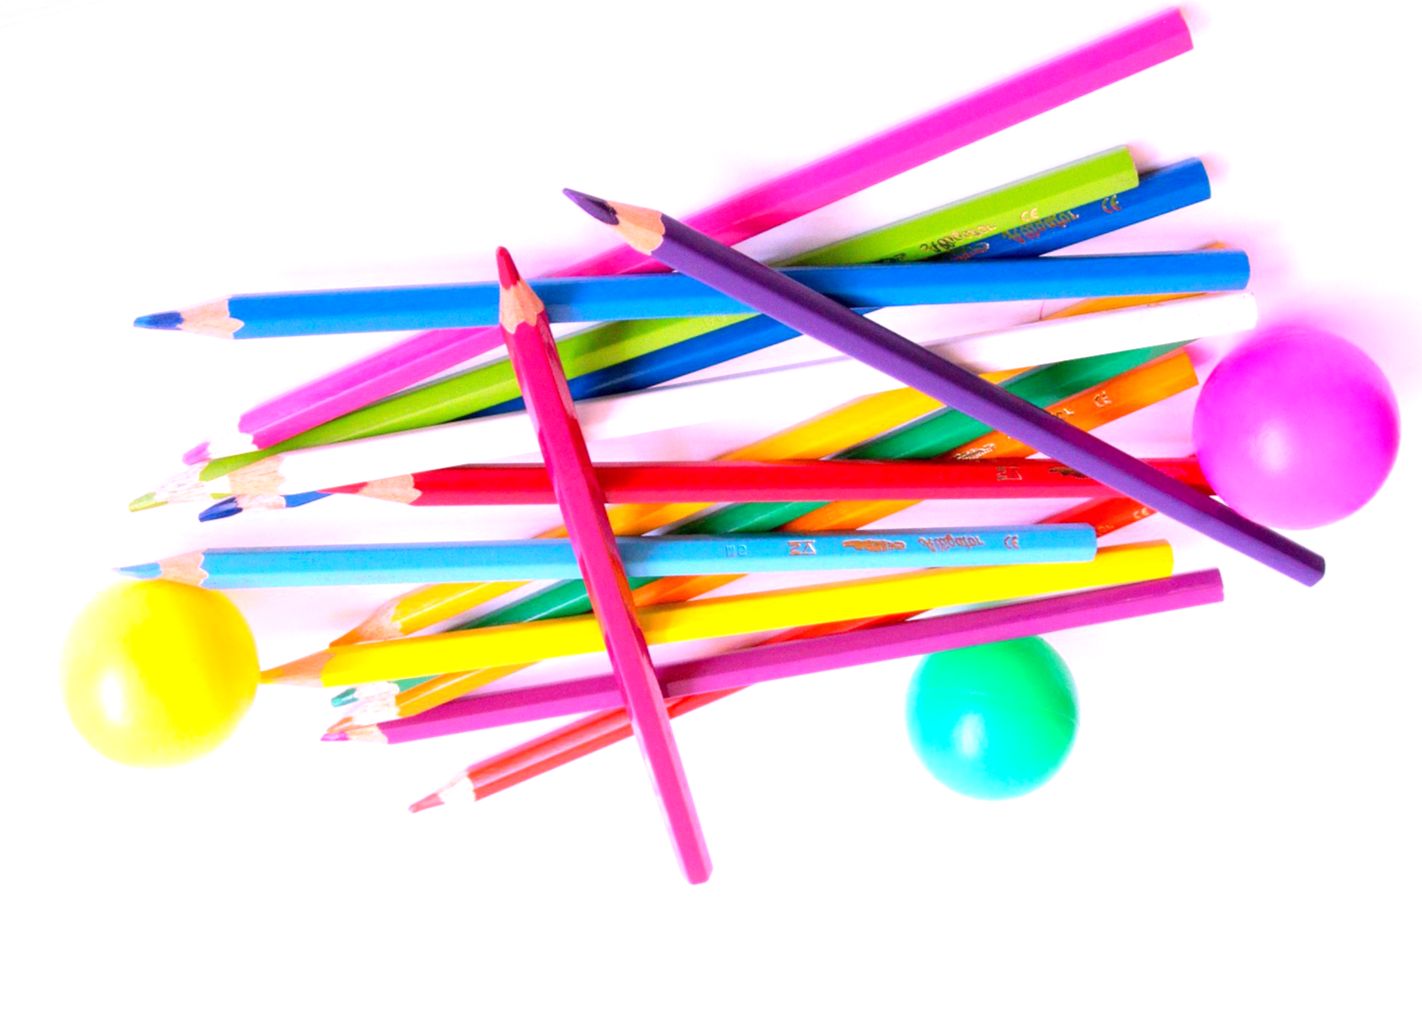 Разноцветные карандаши, цветные шарики - юмористическая сценка для школы